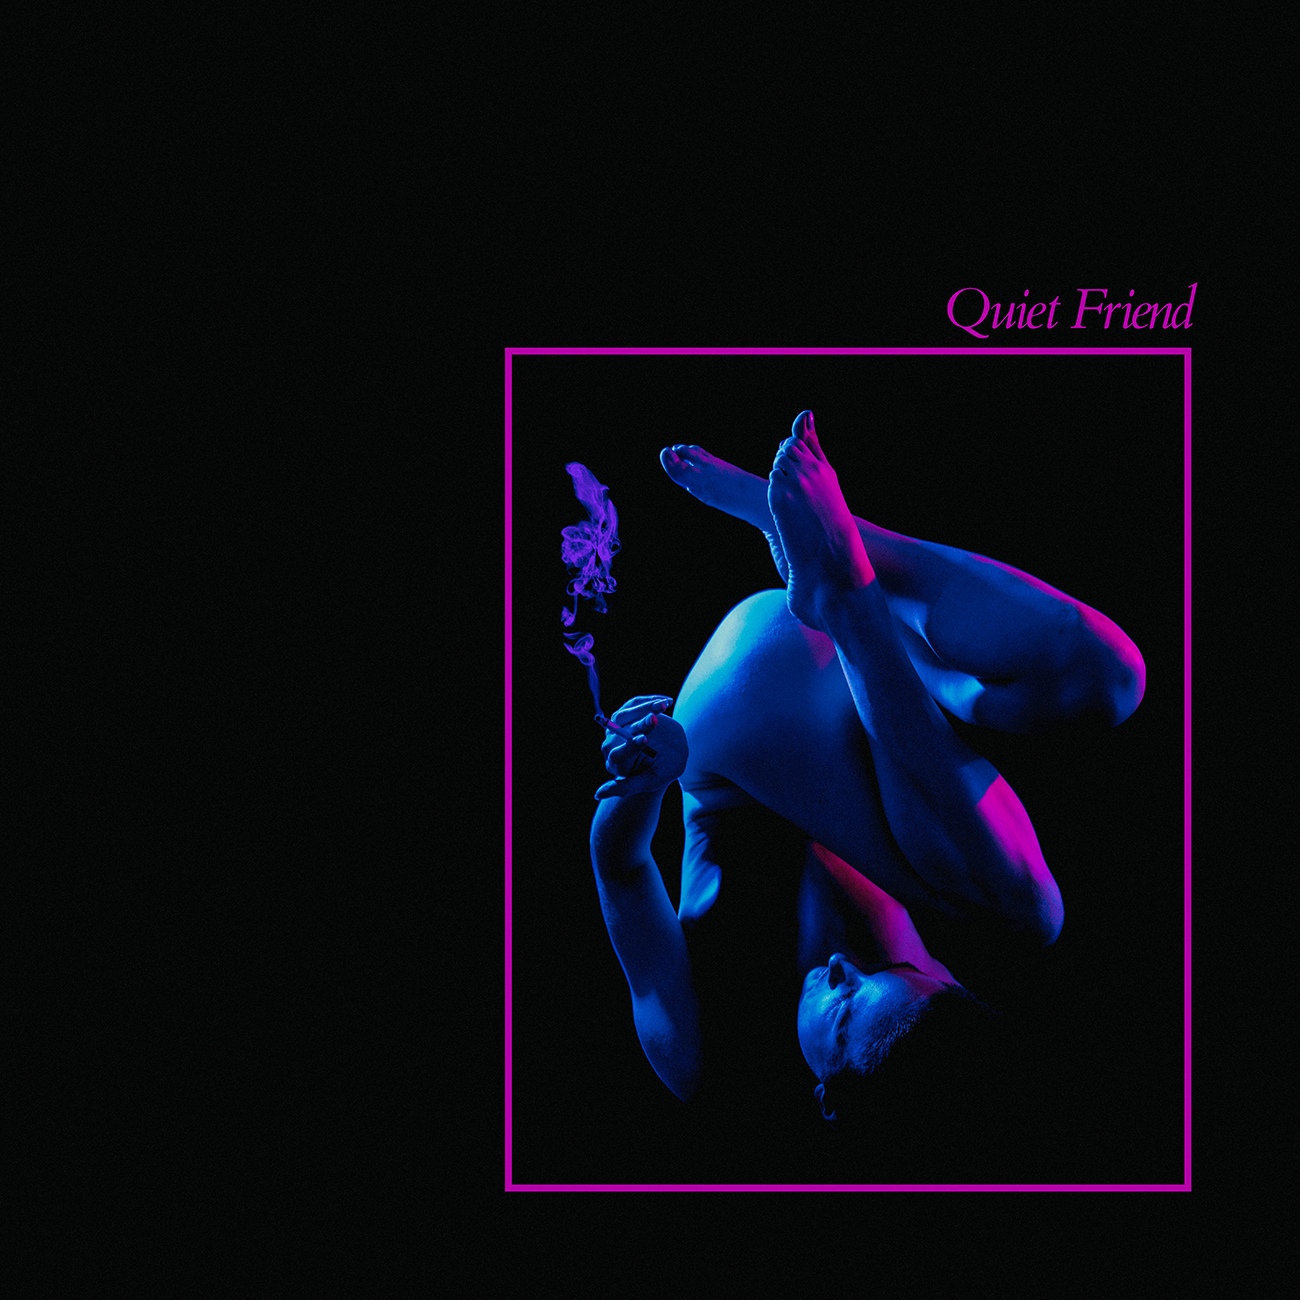 Quiet Friend Album Cover